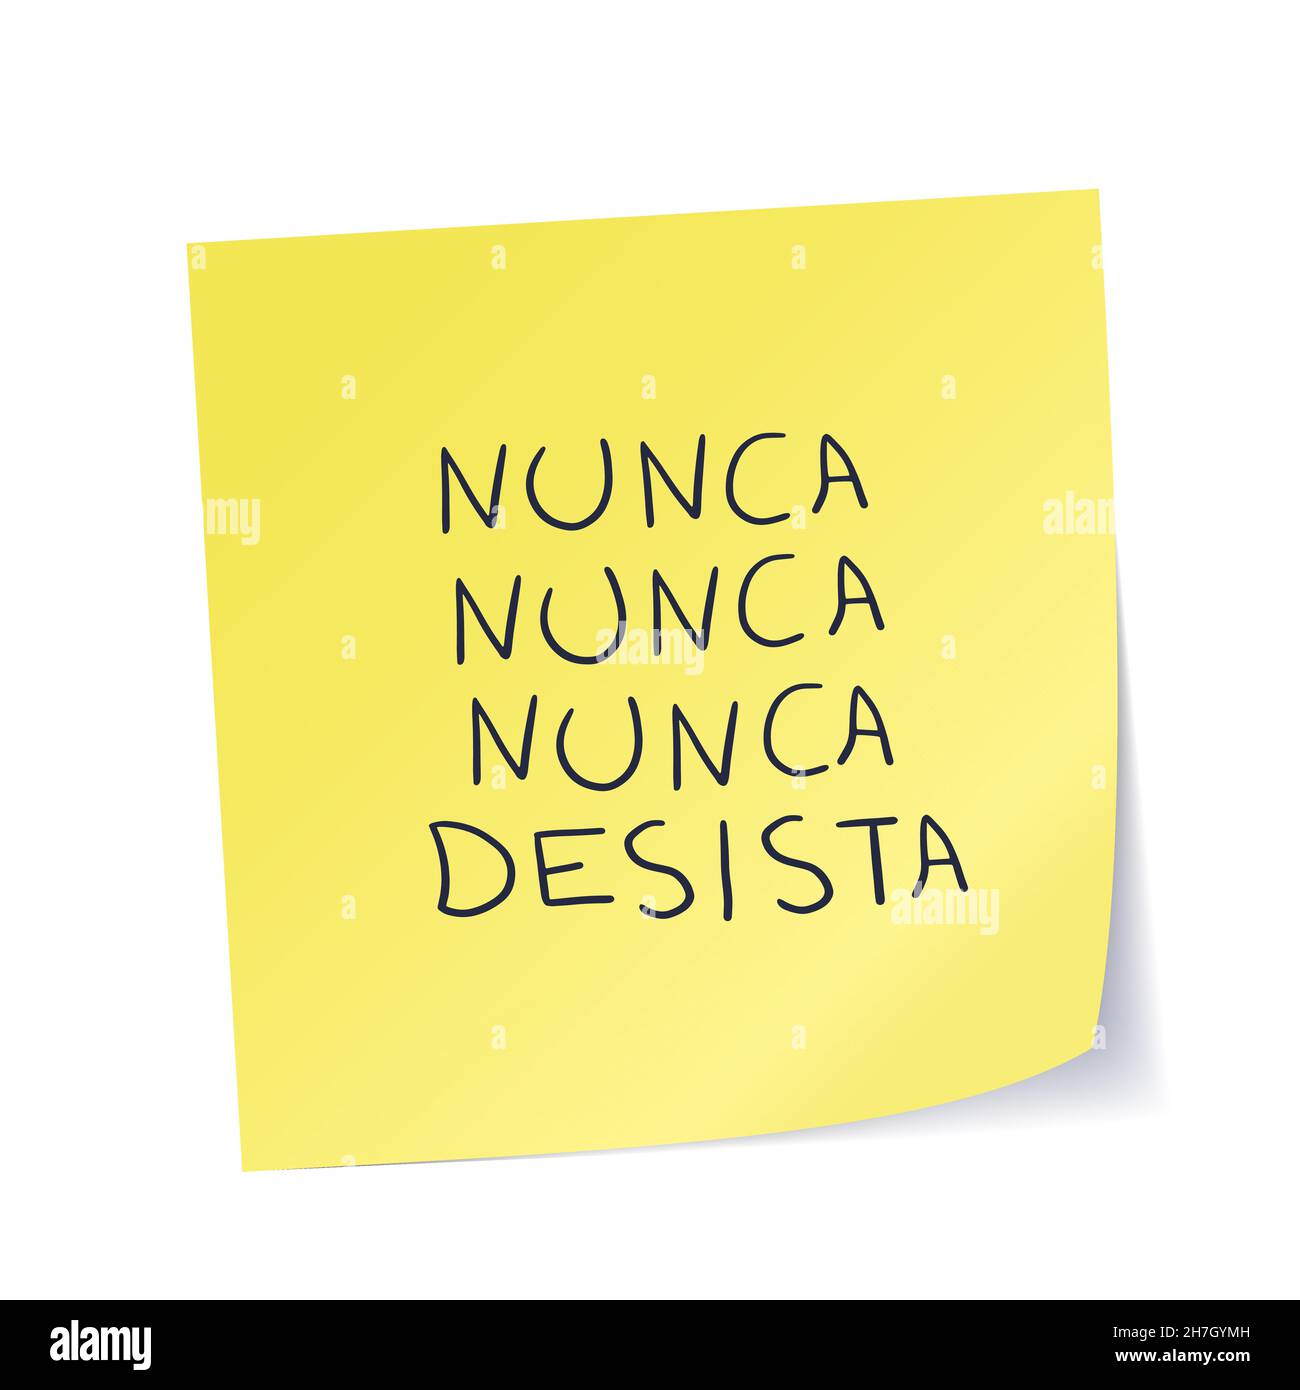 Autocollant jaune encourageant manuscrit en portugais brésilien.Traduction - jamais, jamais, jamais abandonner Illustration de Vecteur